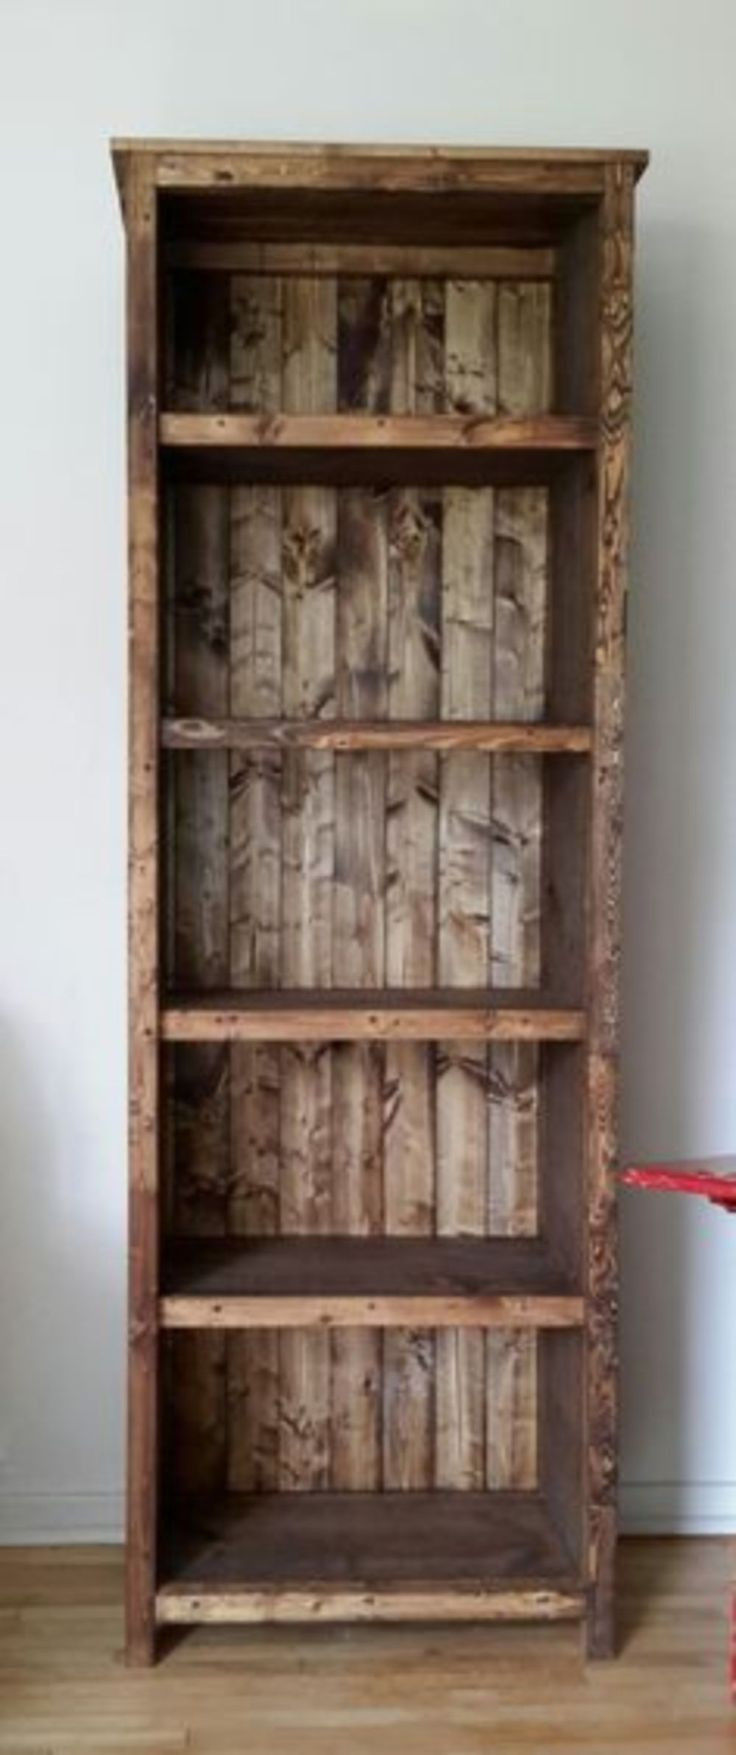 Best ideas about Rustic Furniture Ideas
. Save or Pin De 25 bedste idéer inden for Rustic wood furniture på Now.